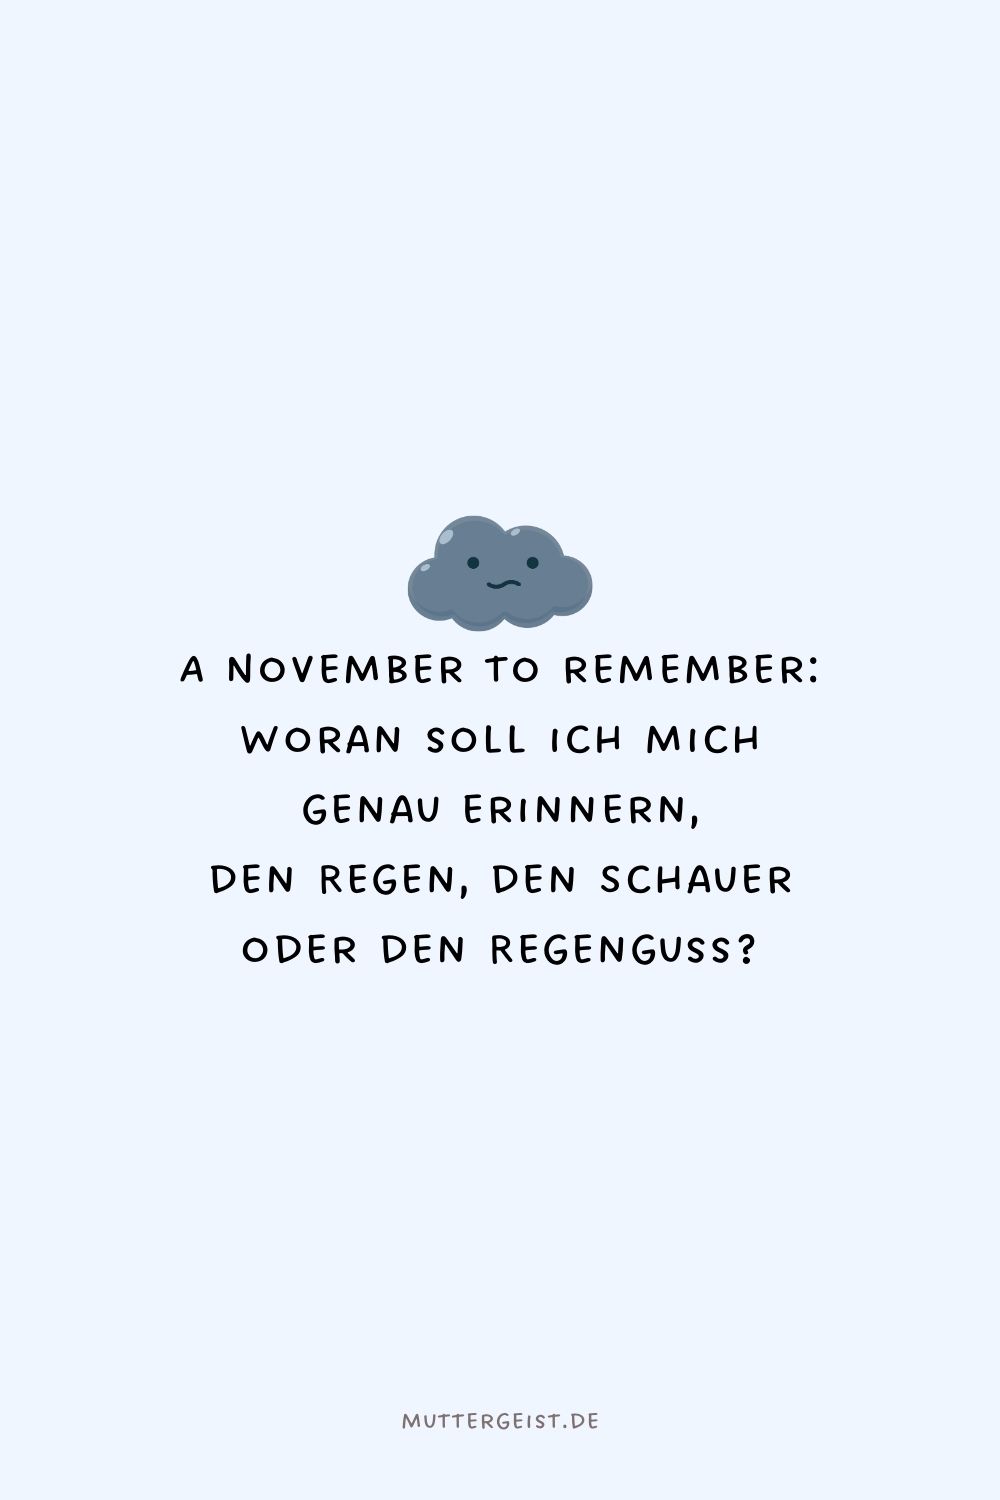 A November to remember Woran soll ich mich genau erinnern, den Regen, den Schauer oder den Regenguss